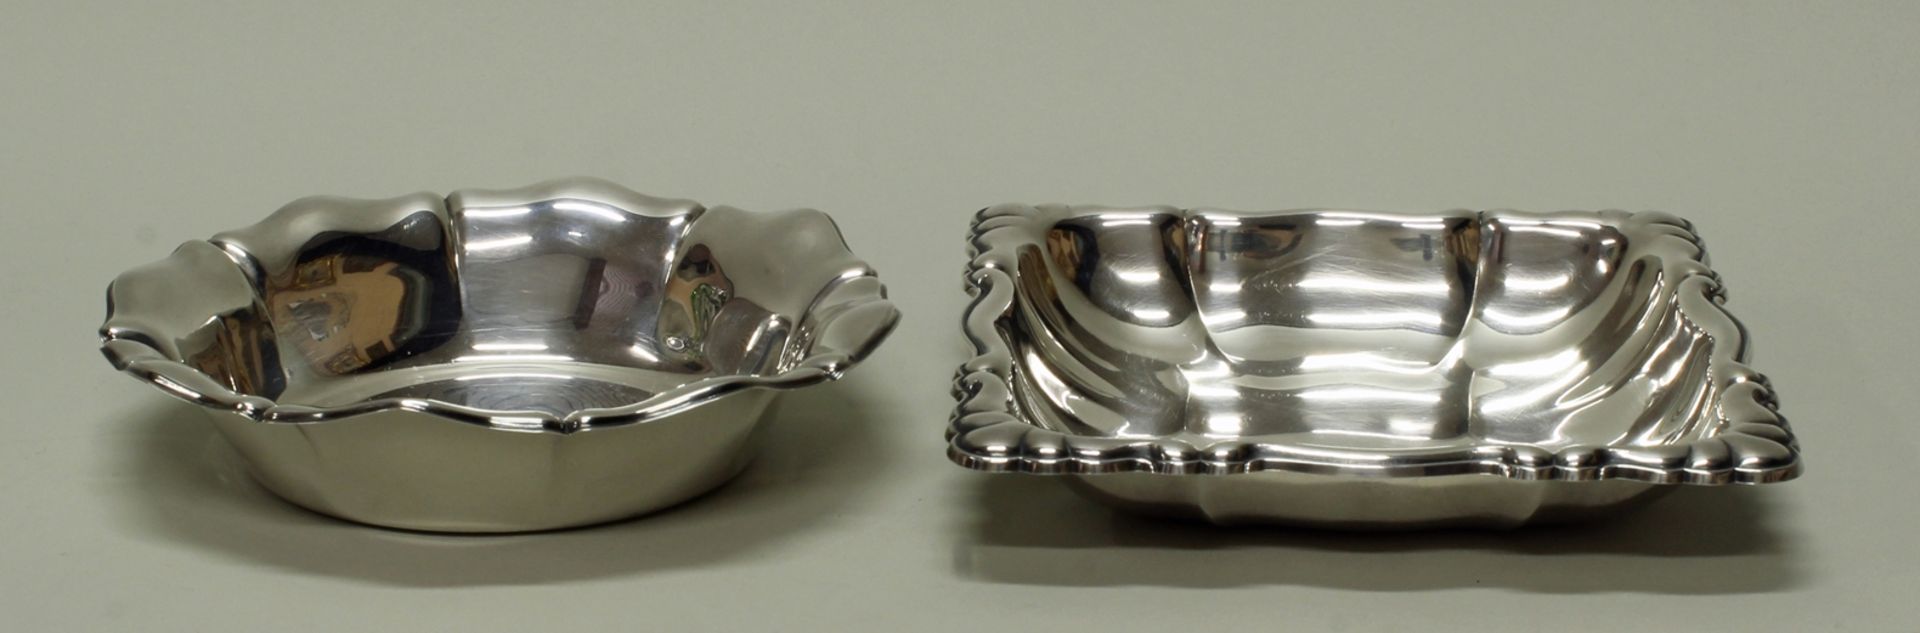 2 Schalen, Silber 835, deutsch, ø 16 cm (eingerissen) bzw. 15.5 x 15.5 cm, zus. ca. 212 g